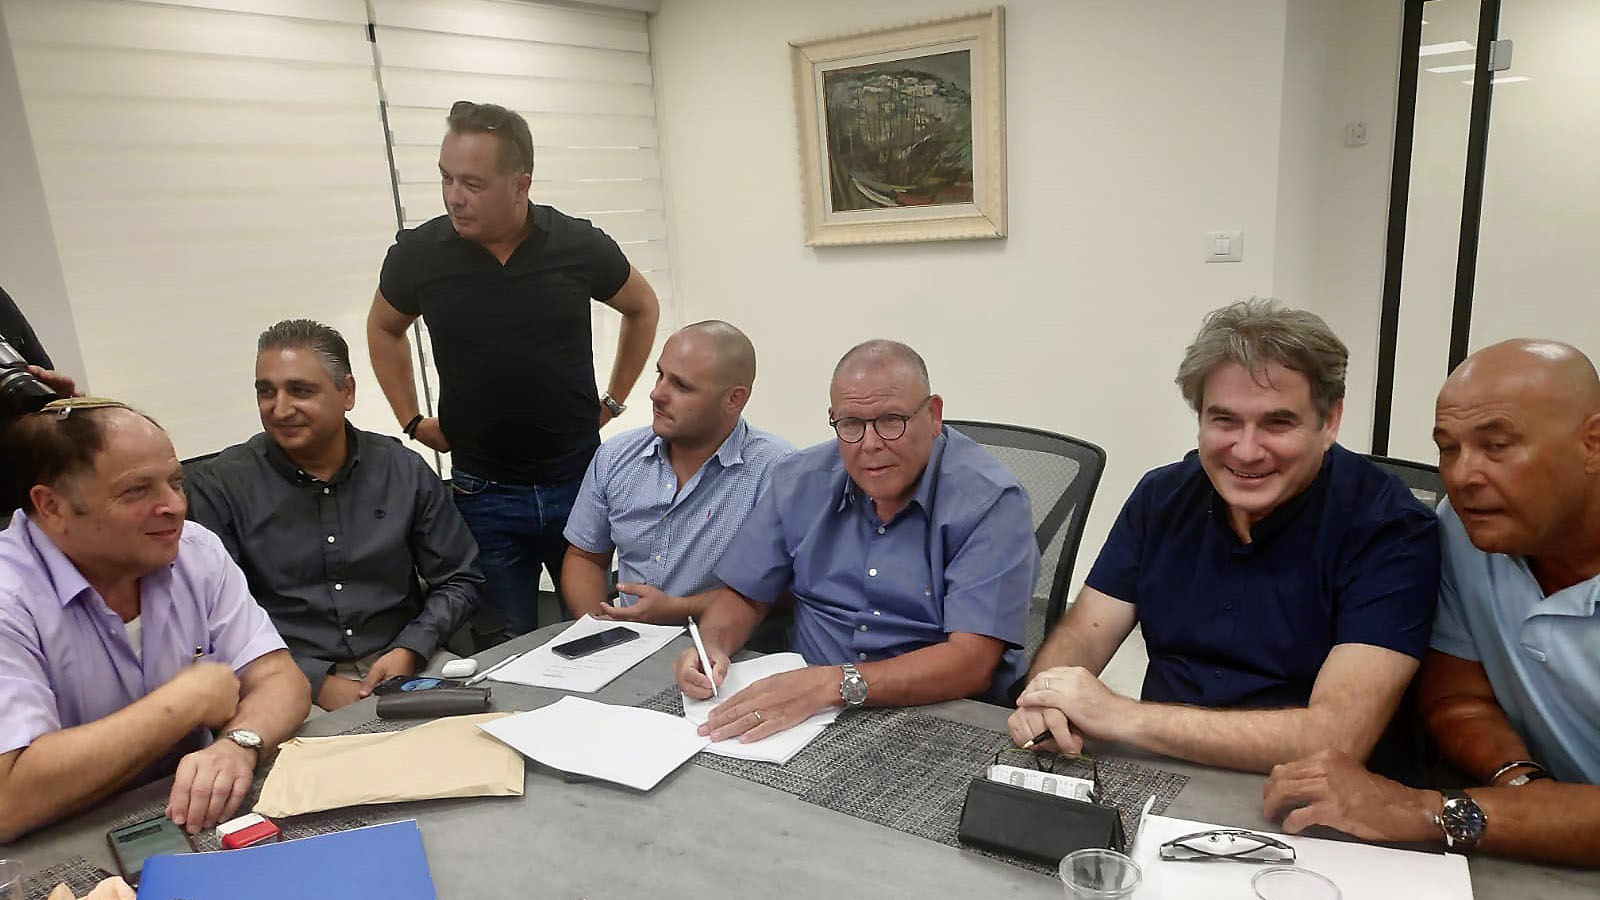 اتفاقية في ميناء حيفا ، سيتم نقل العاملين في قسم البحر للعمل في شركة تابعة لشركة "موانئ إسرائيل". 27 أغسطس 2019. (نقلاً عن: المتحدثون باسم الهستدروت)